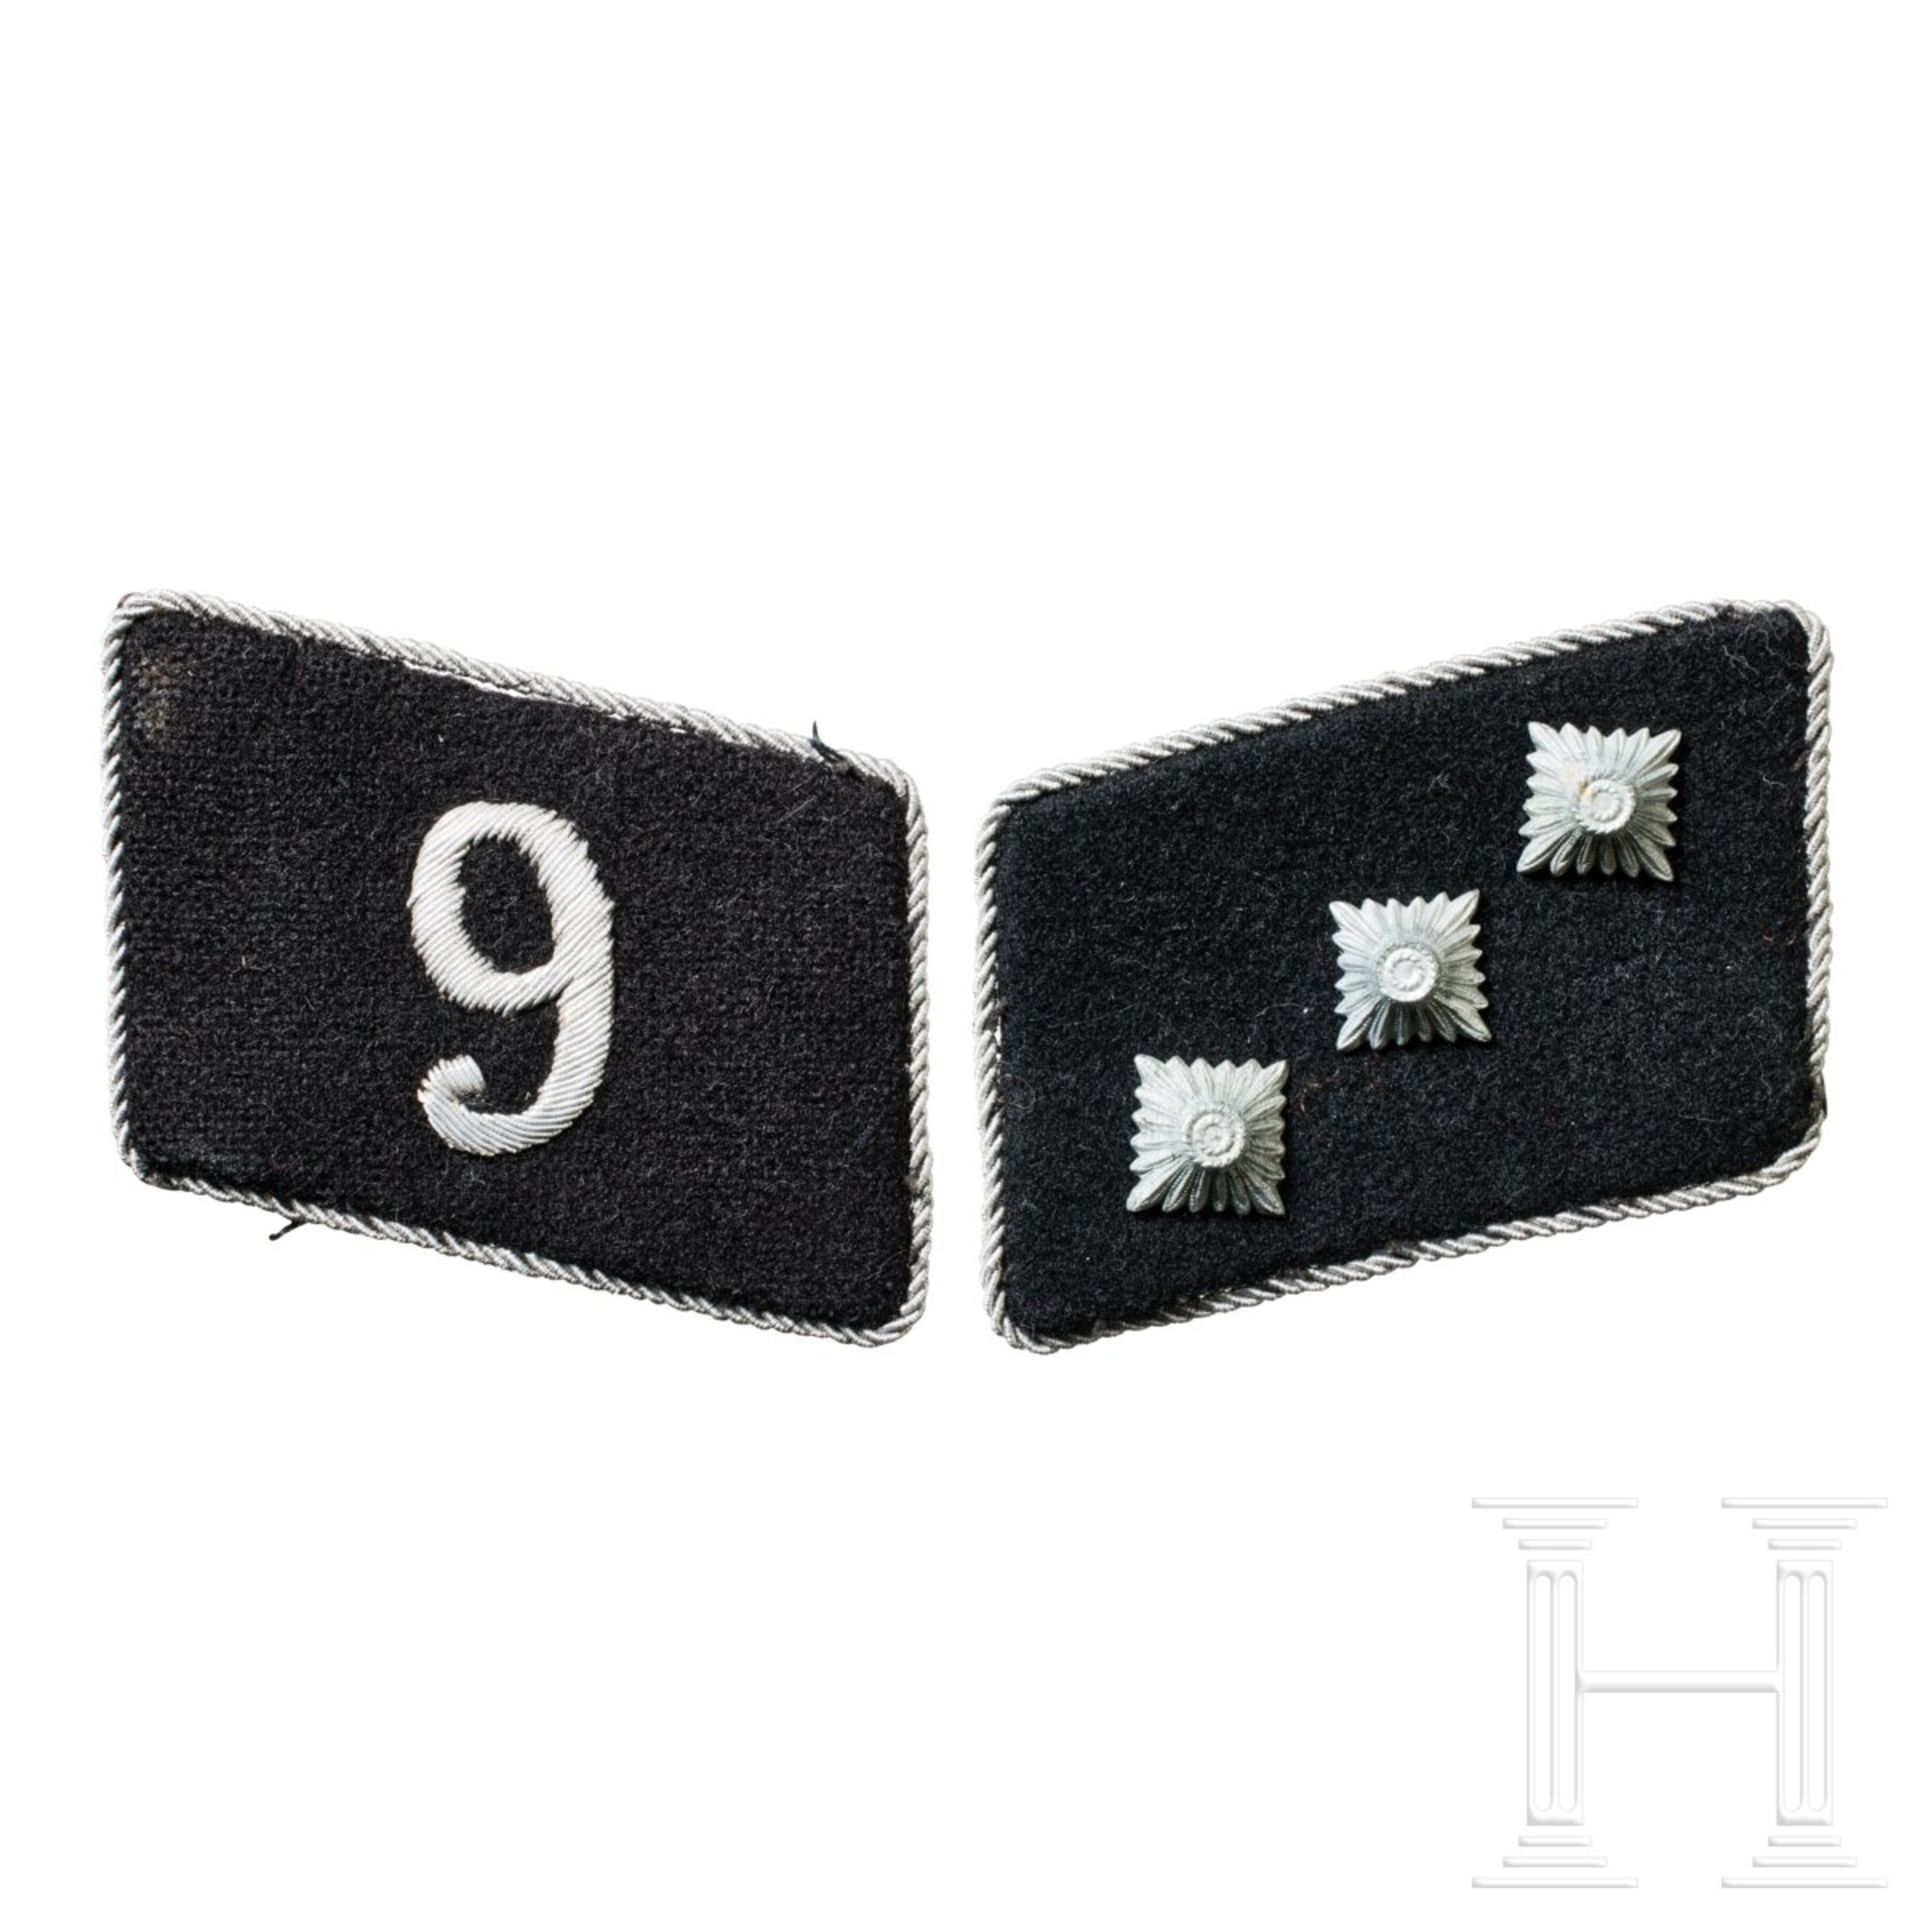 A Pair of Collar Tabs for an Untersturmführer of SS-Fuss-Standarte 9 "Stettin" Officer